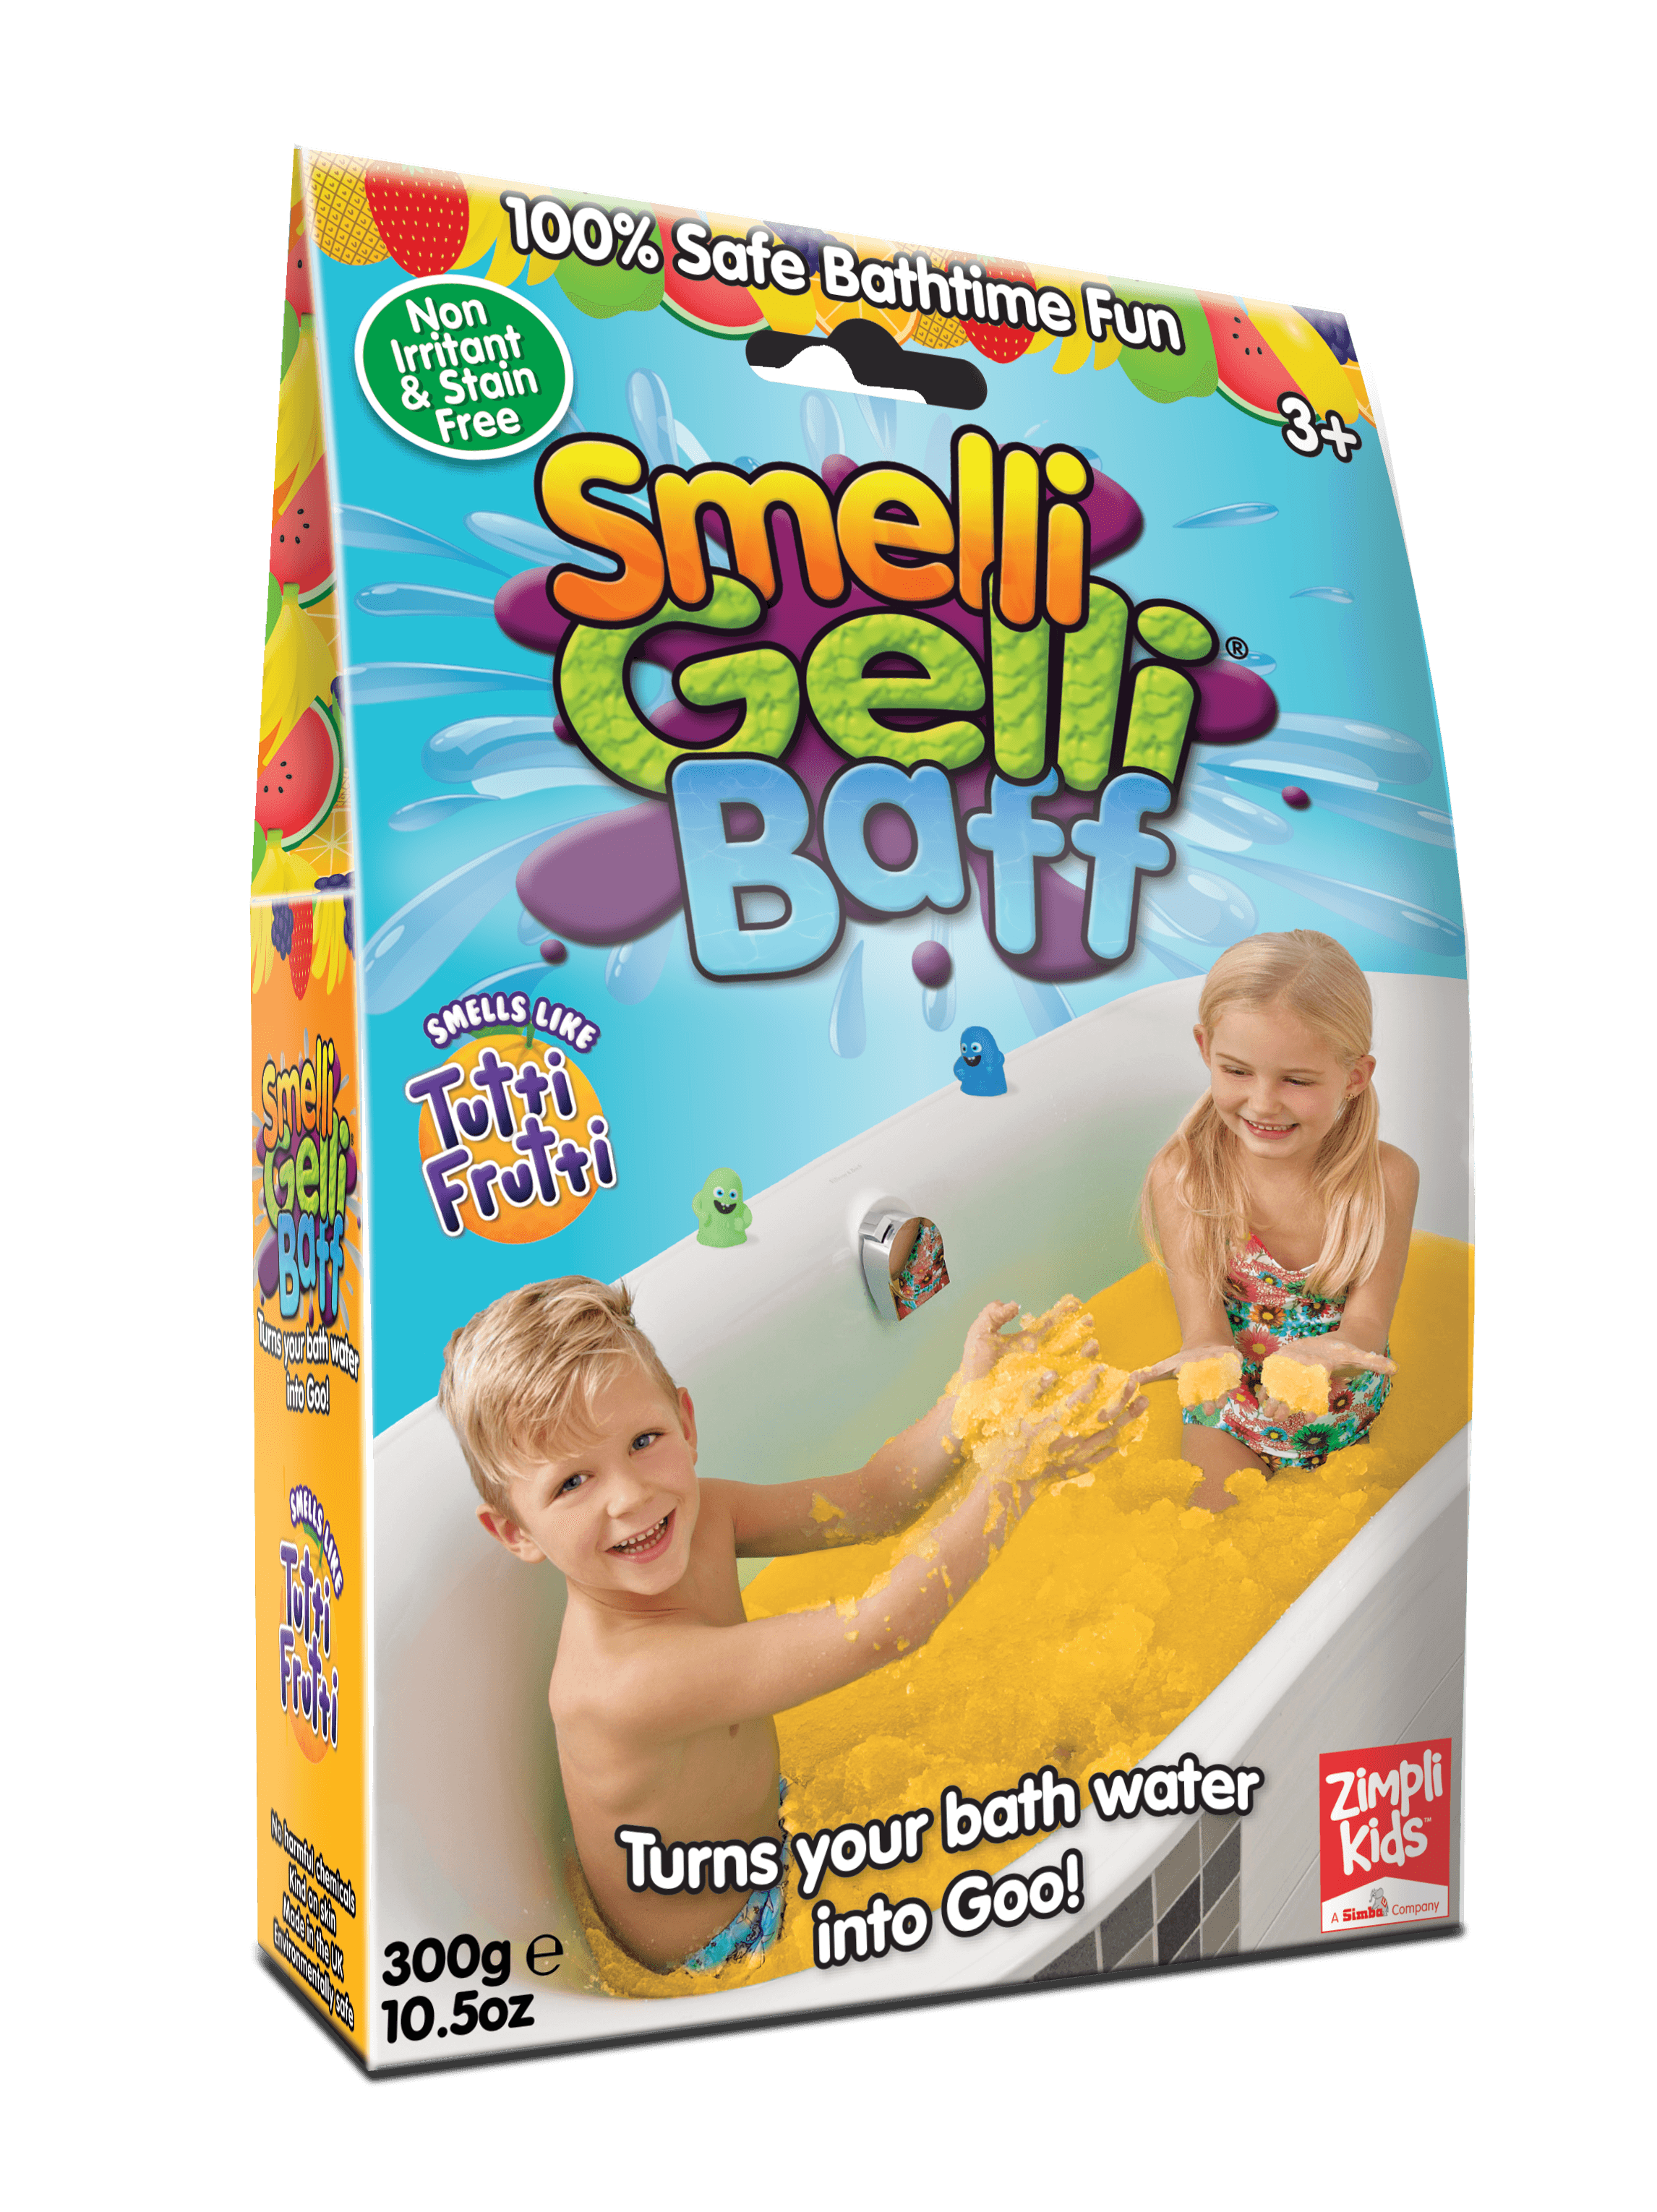 Zimpli gyerekek: gelli baff illati mágikus fürdőpor